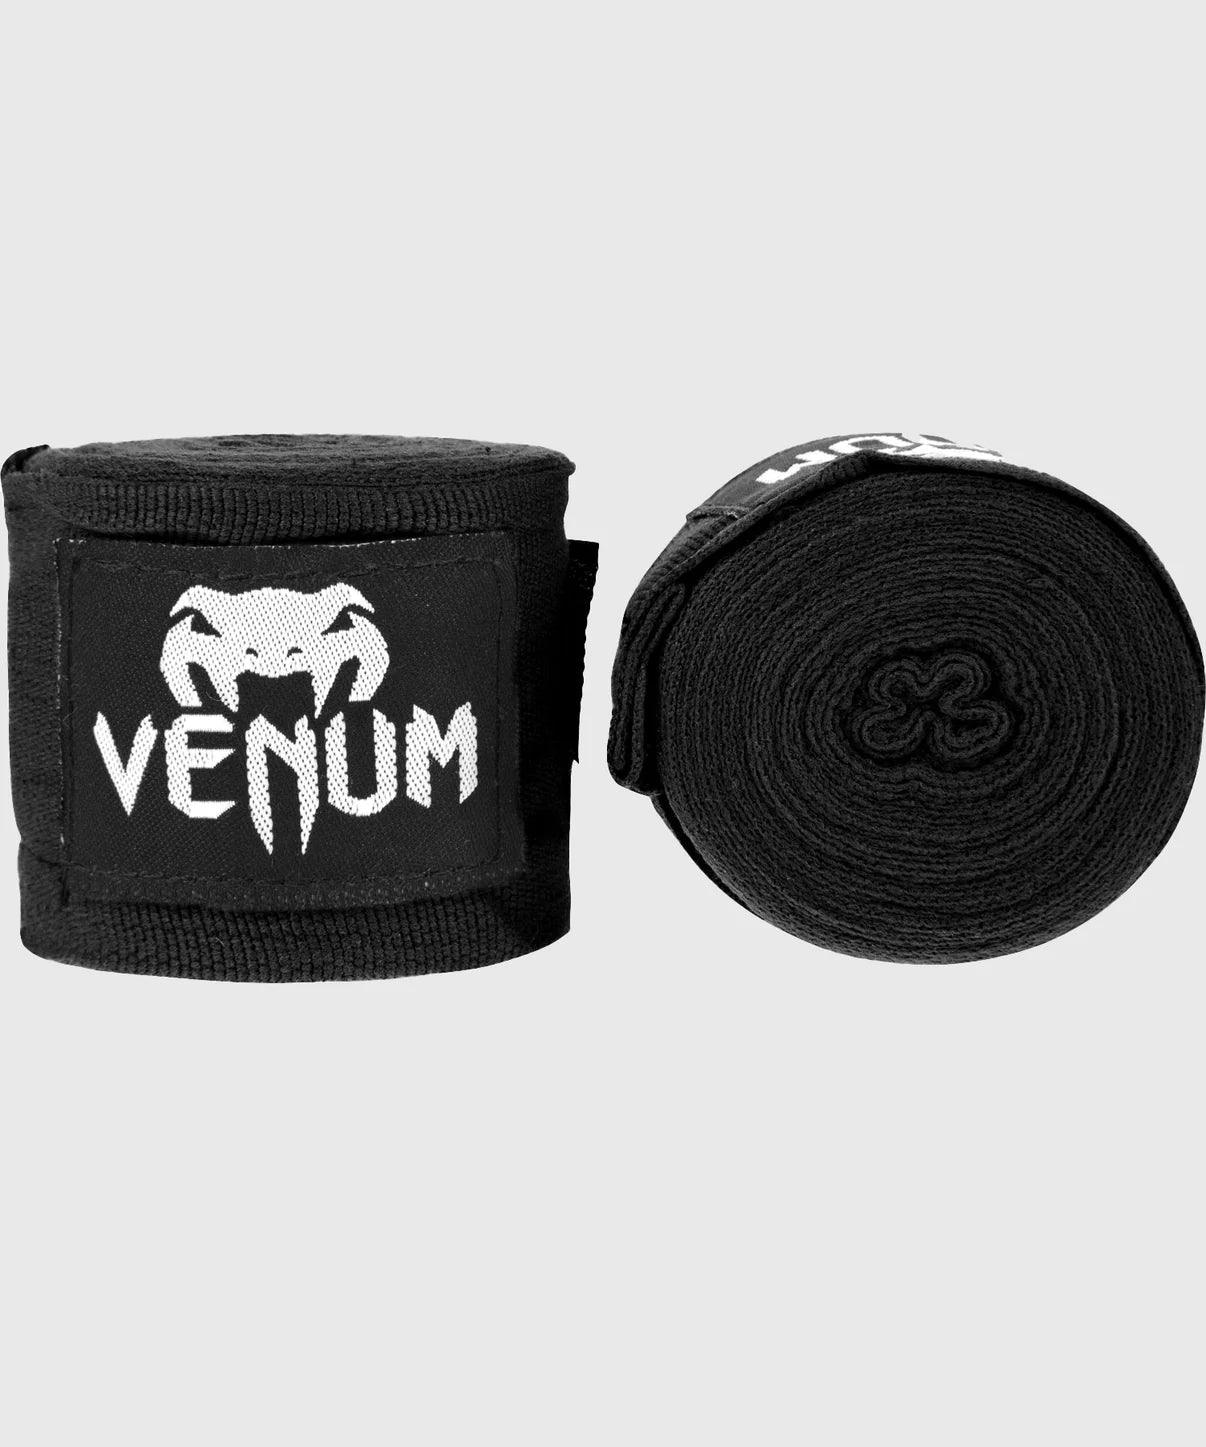 Bandes de boxe Venum Kontact 450 cm Noir